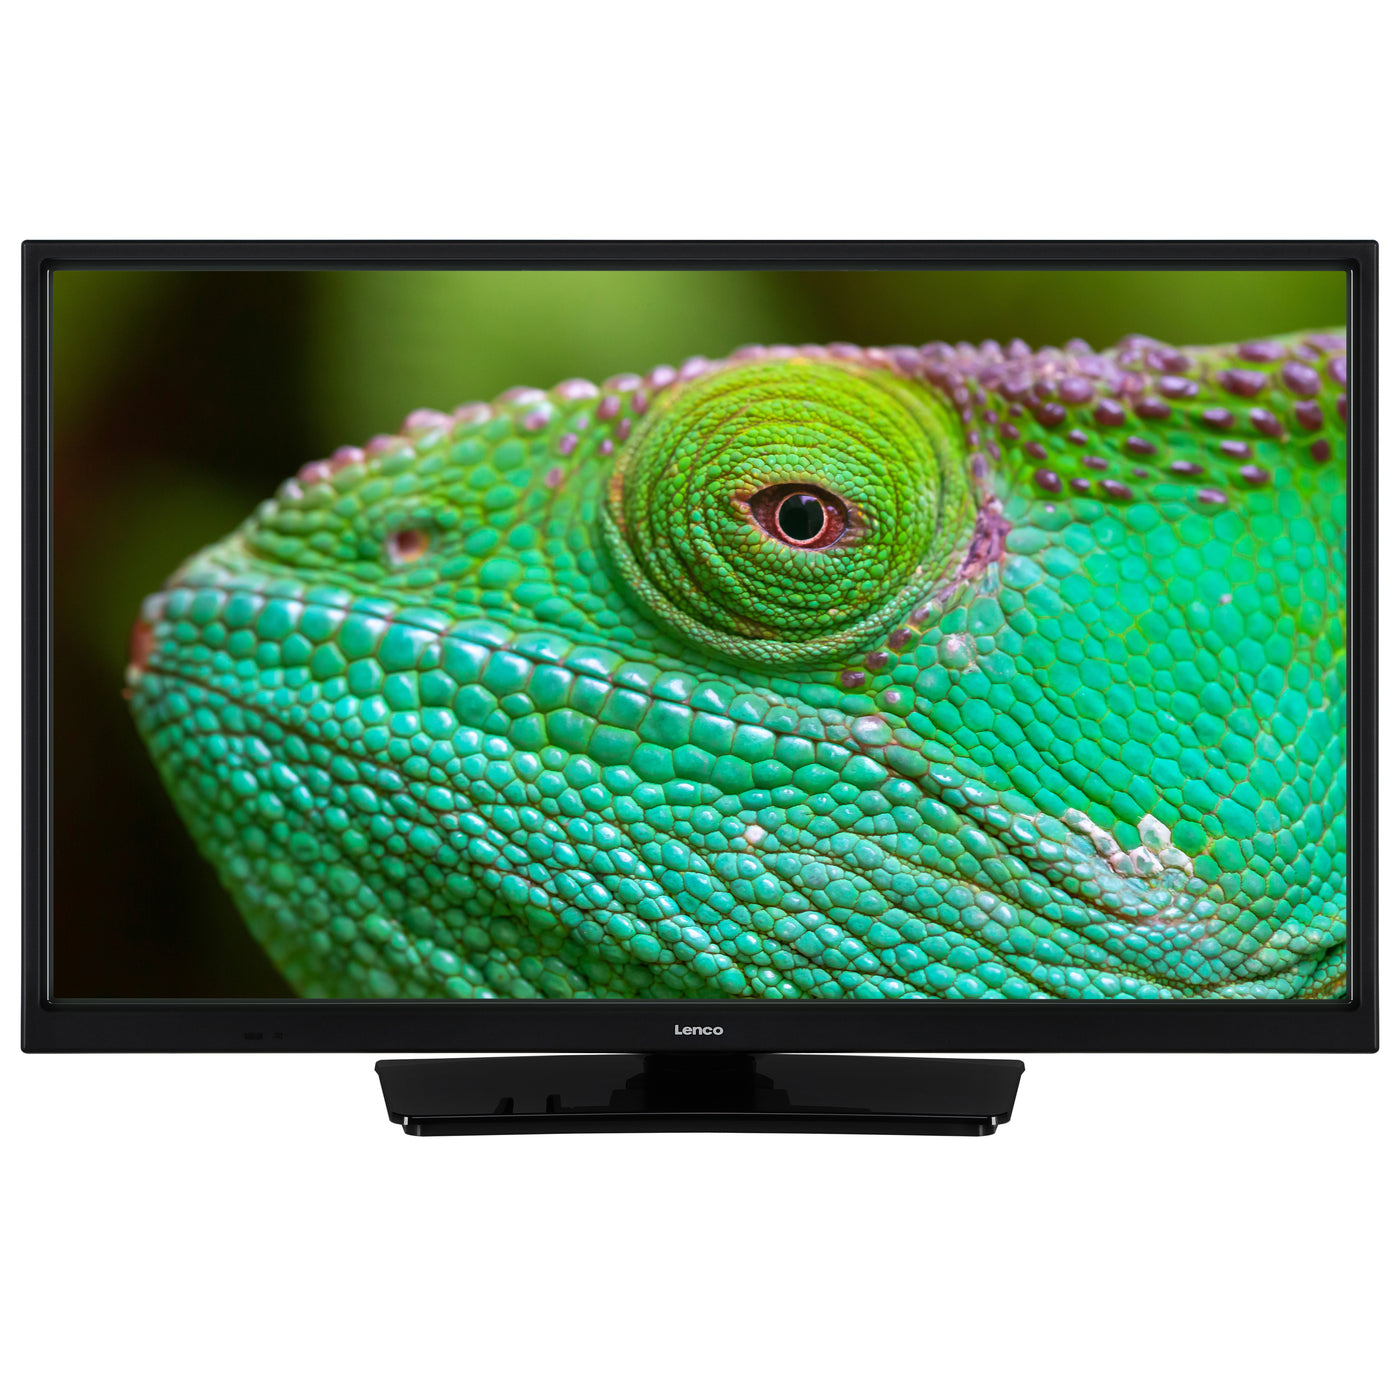 Lenco DVL-2483BK (V2) - 24" Smart TV avec lecteur DVD intégré et adaptateur voiture 12 V - Noir